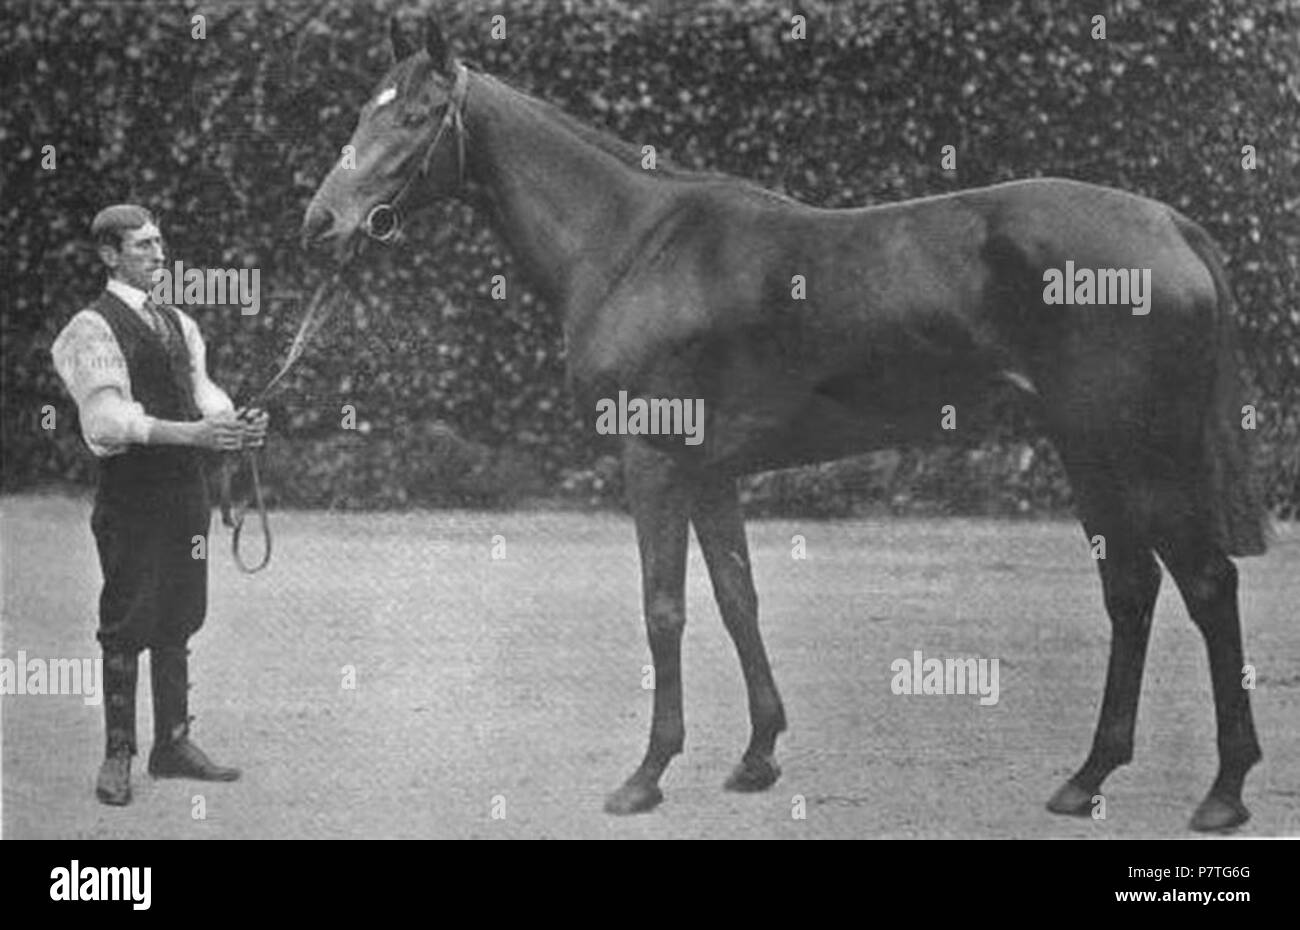 Quintessenza, vincitore del 1903 1000 Guinea. 1903 324 quintessenza (cavallo) Foto Stock